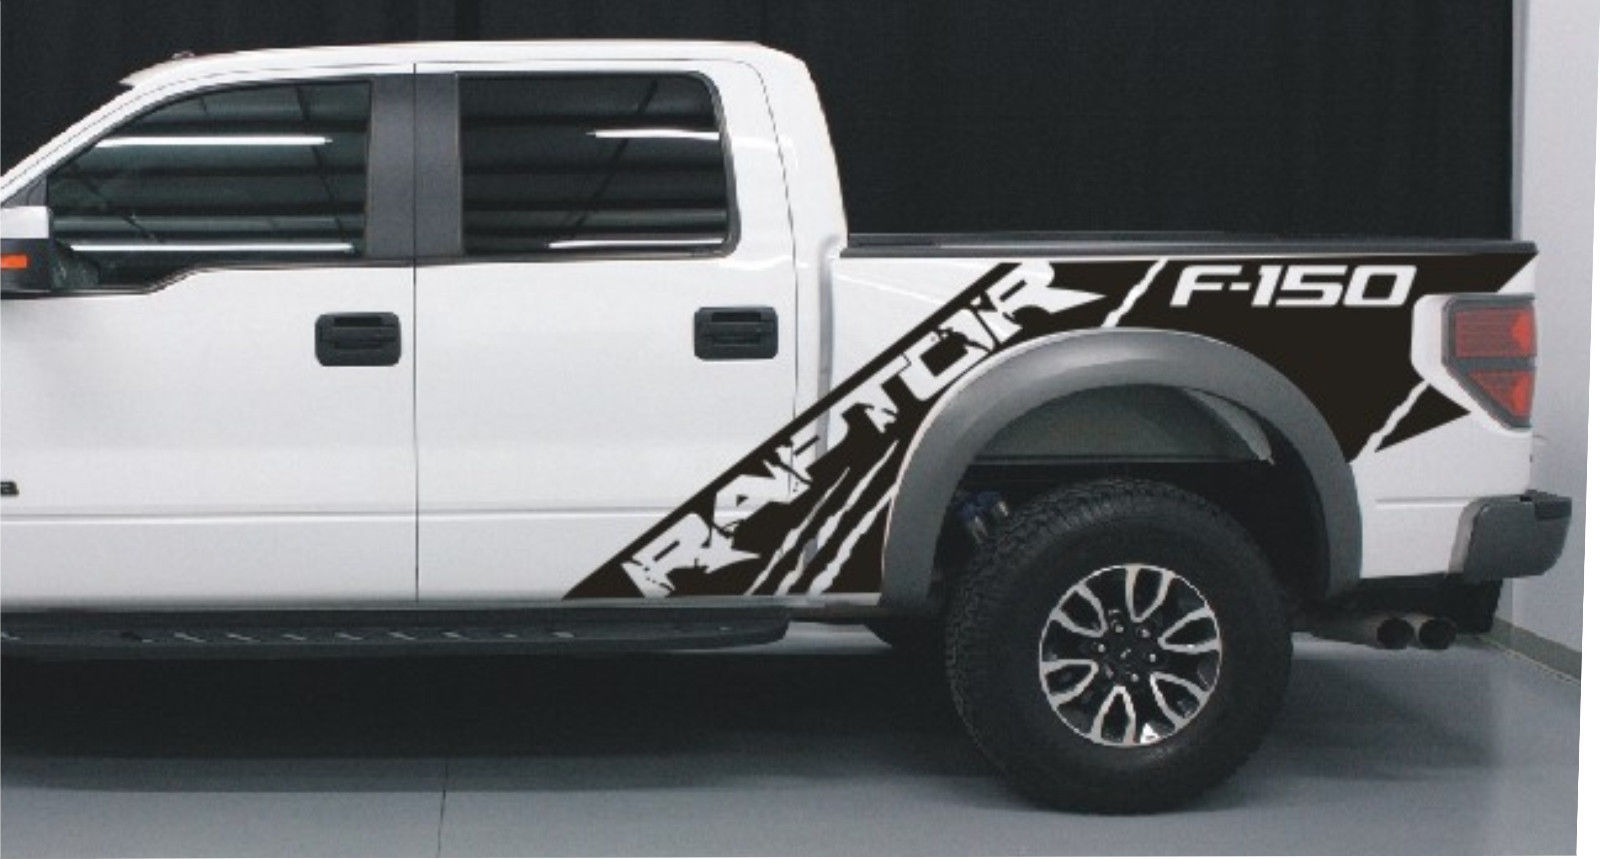 Ford Raptor SVT F150 Bedside Predator Vinyl-Grafikaufkleber für Modelle von 2010 bis 2014